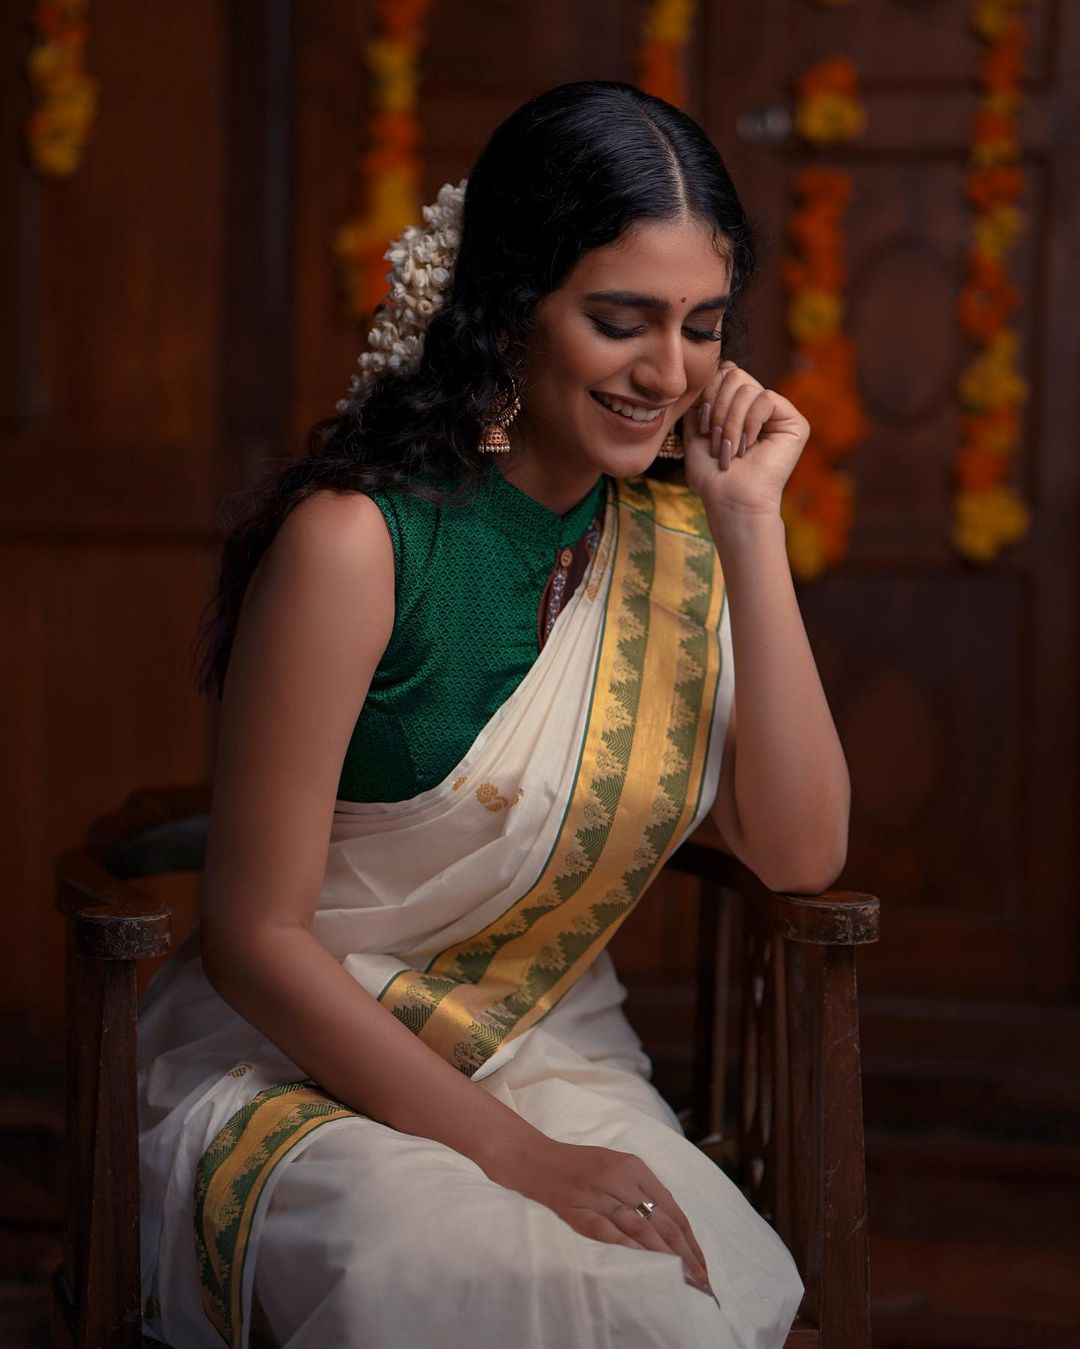 Priya Prakash Varrier a beautiful sight in a six-yards attire